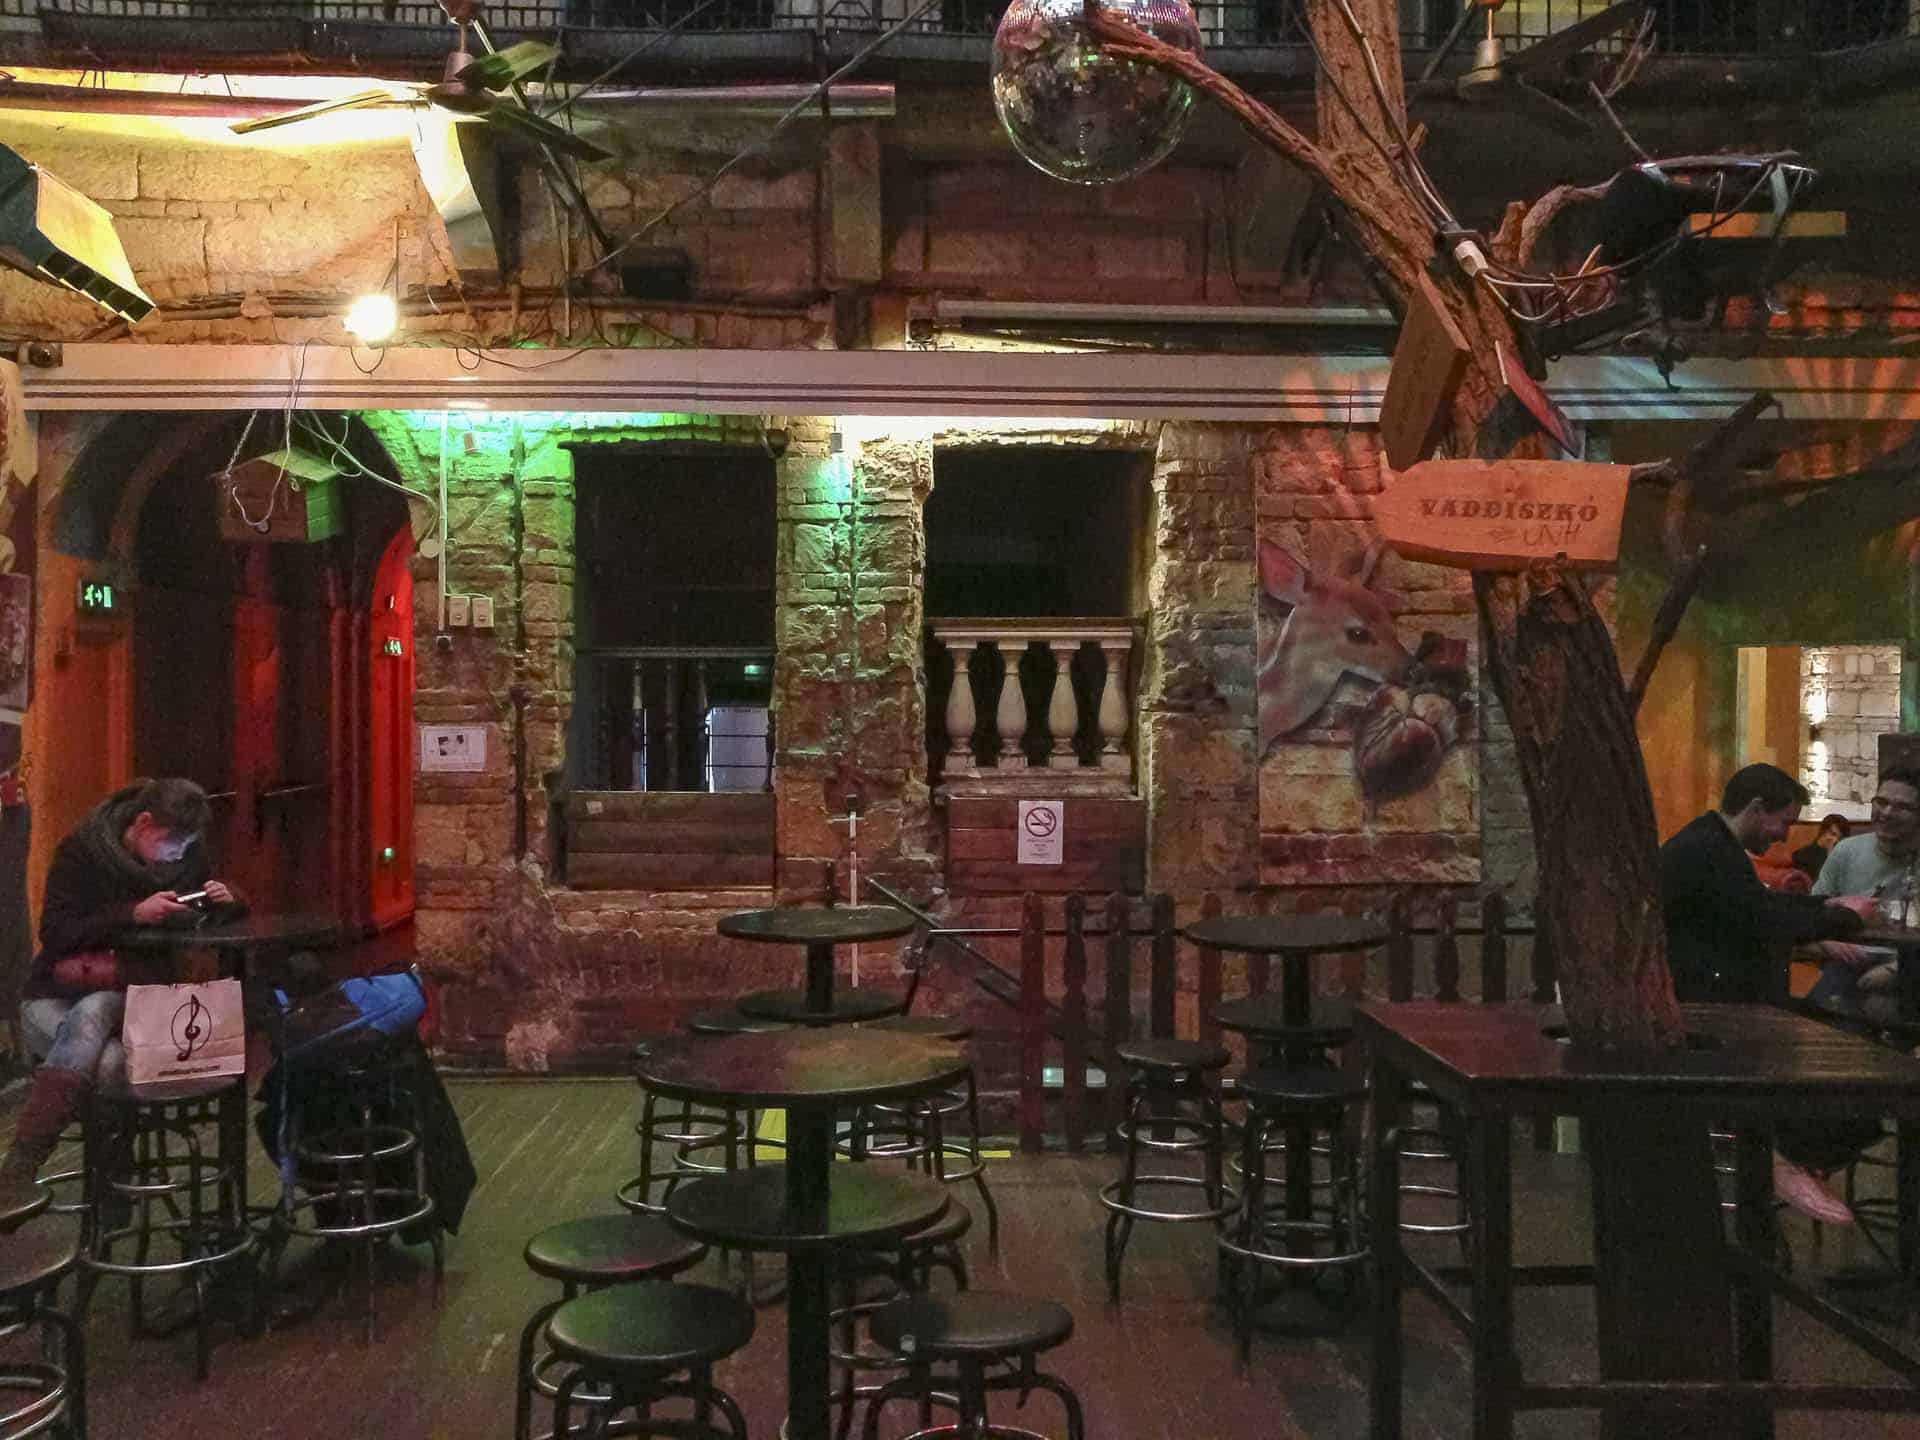 Inside Szimpla Kert Ruin Bar in Budapest, Hungary